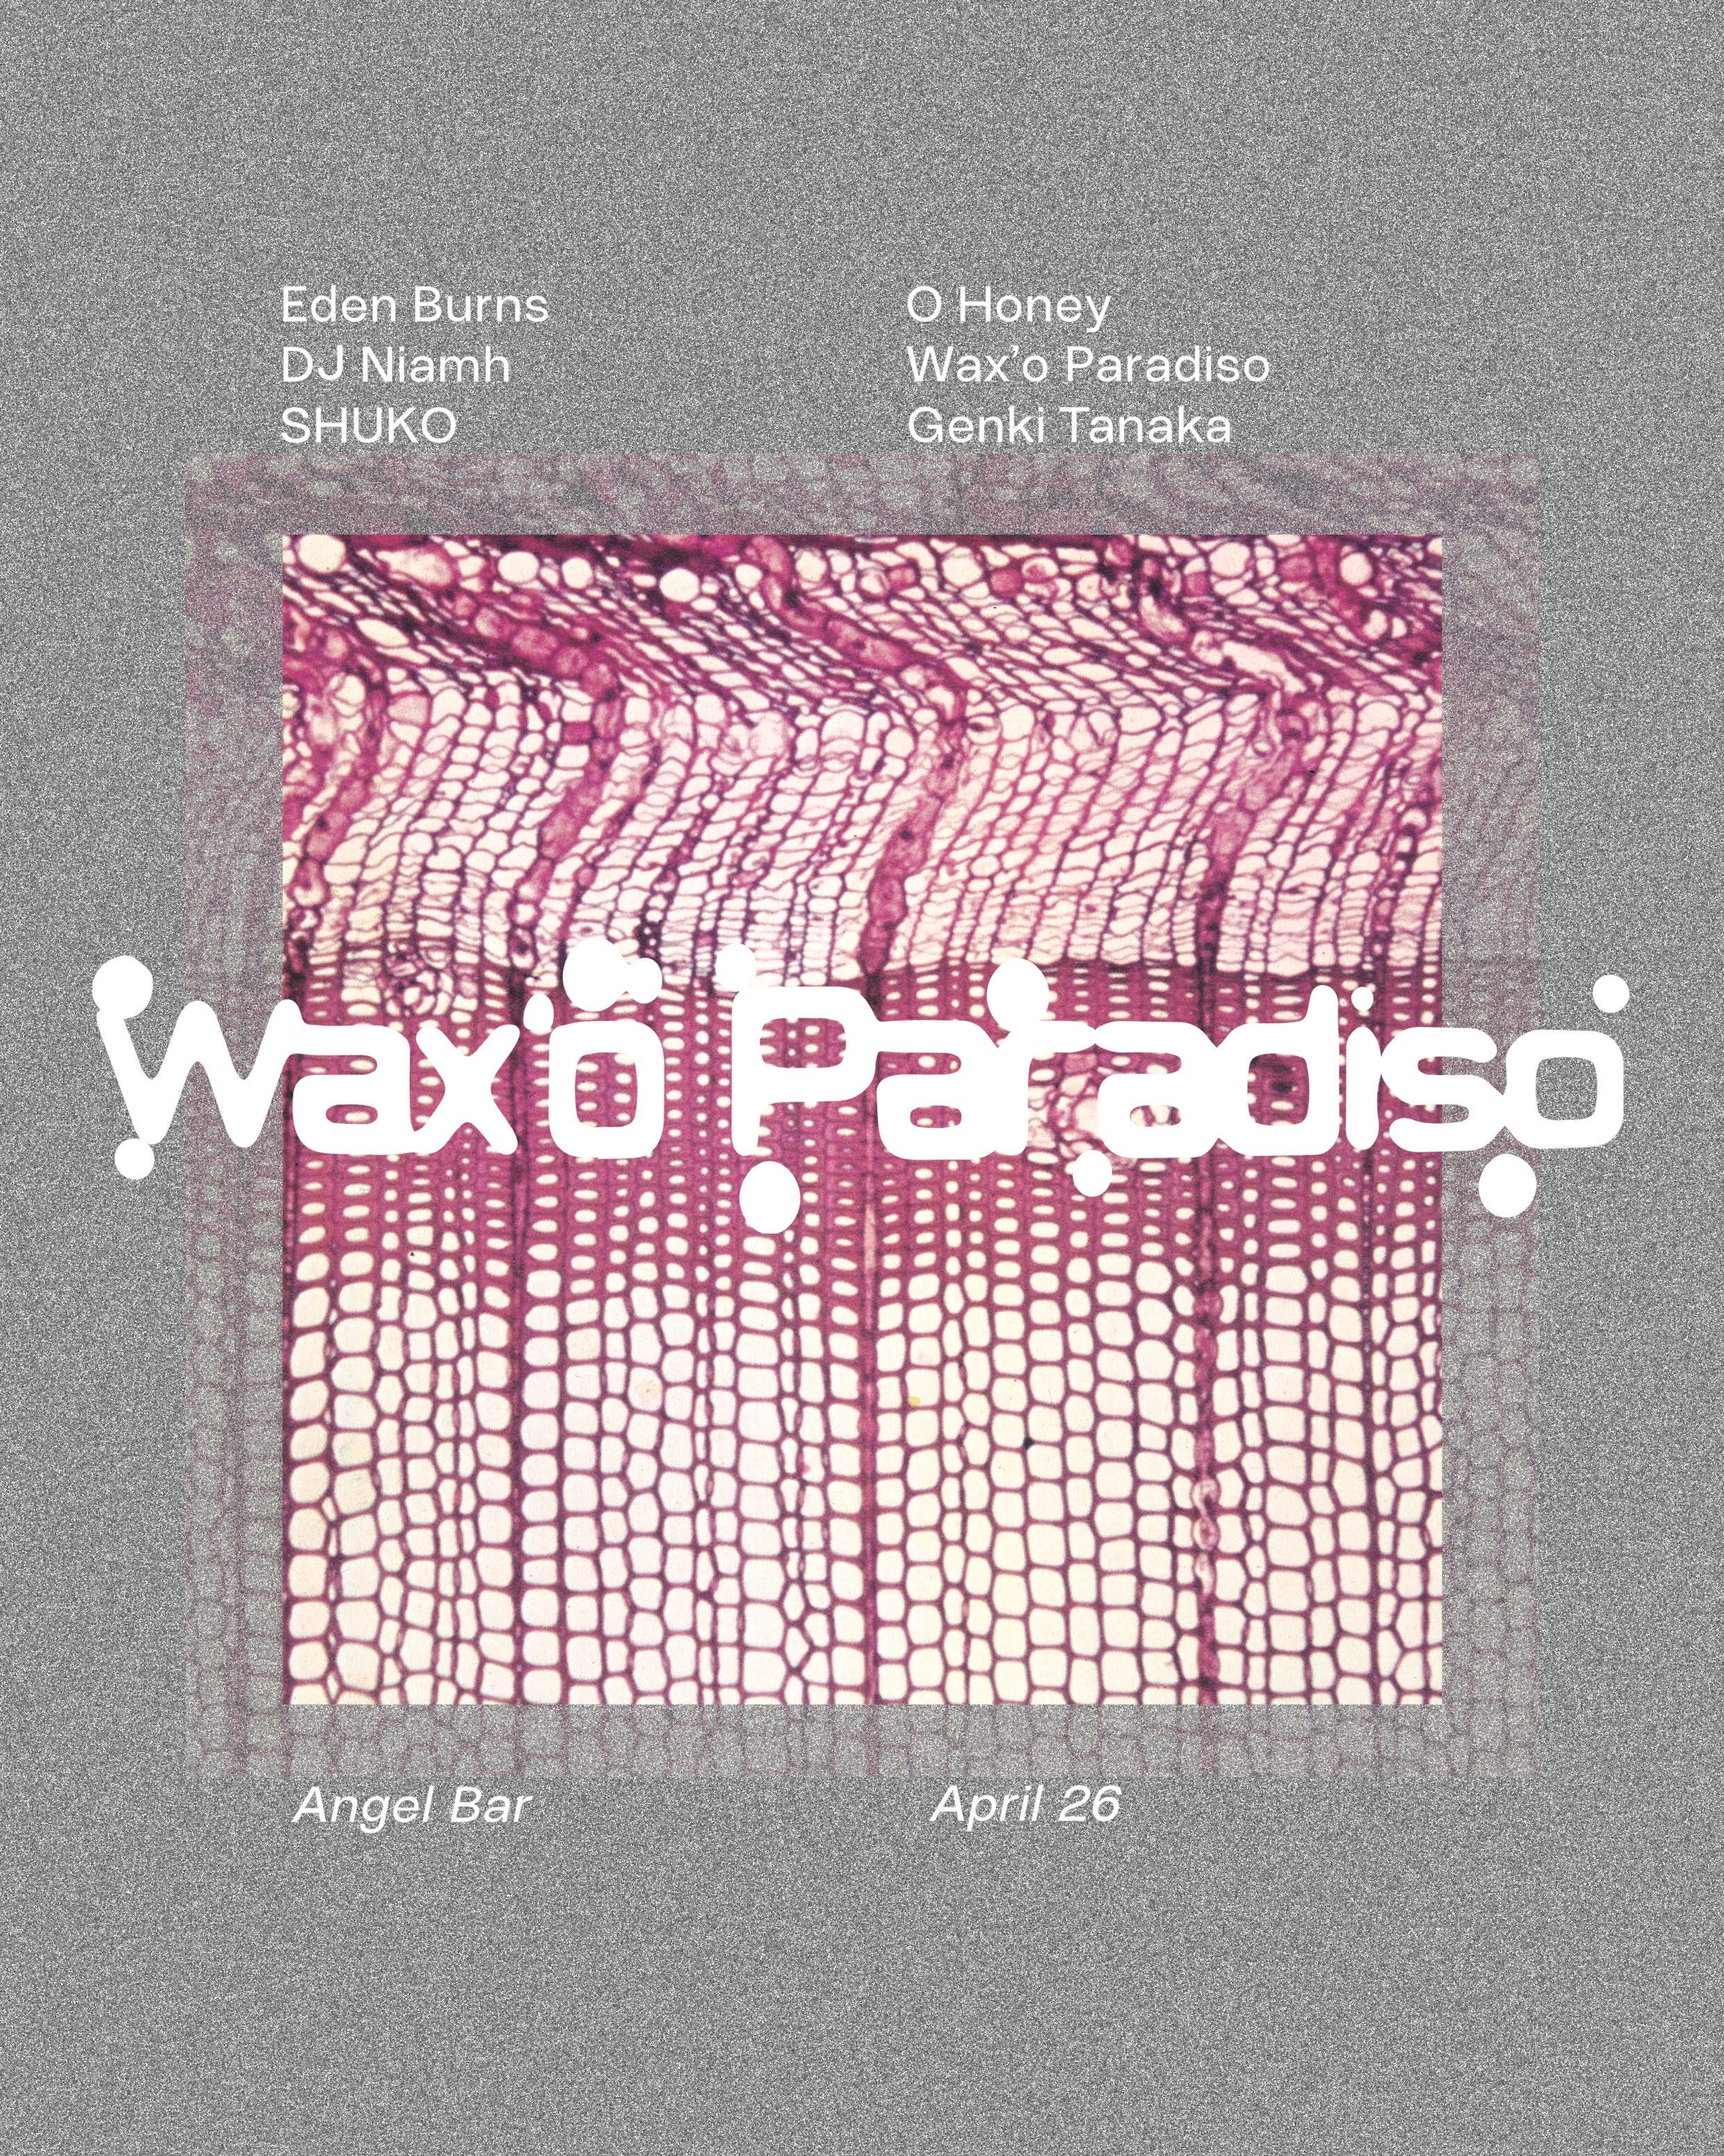 Wax'o Paradiso - フライヤー表